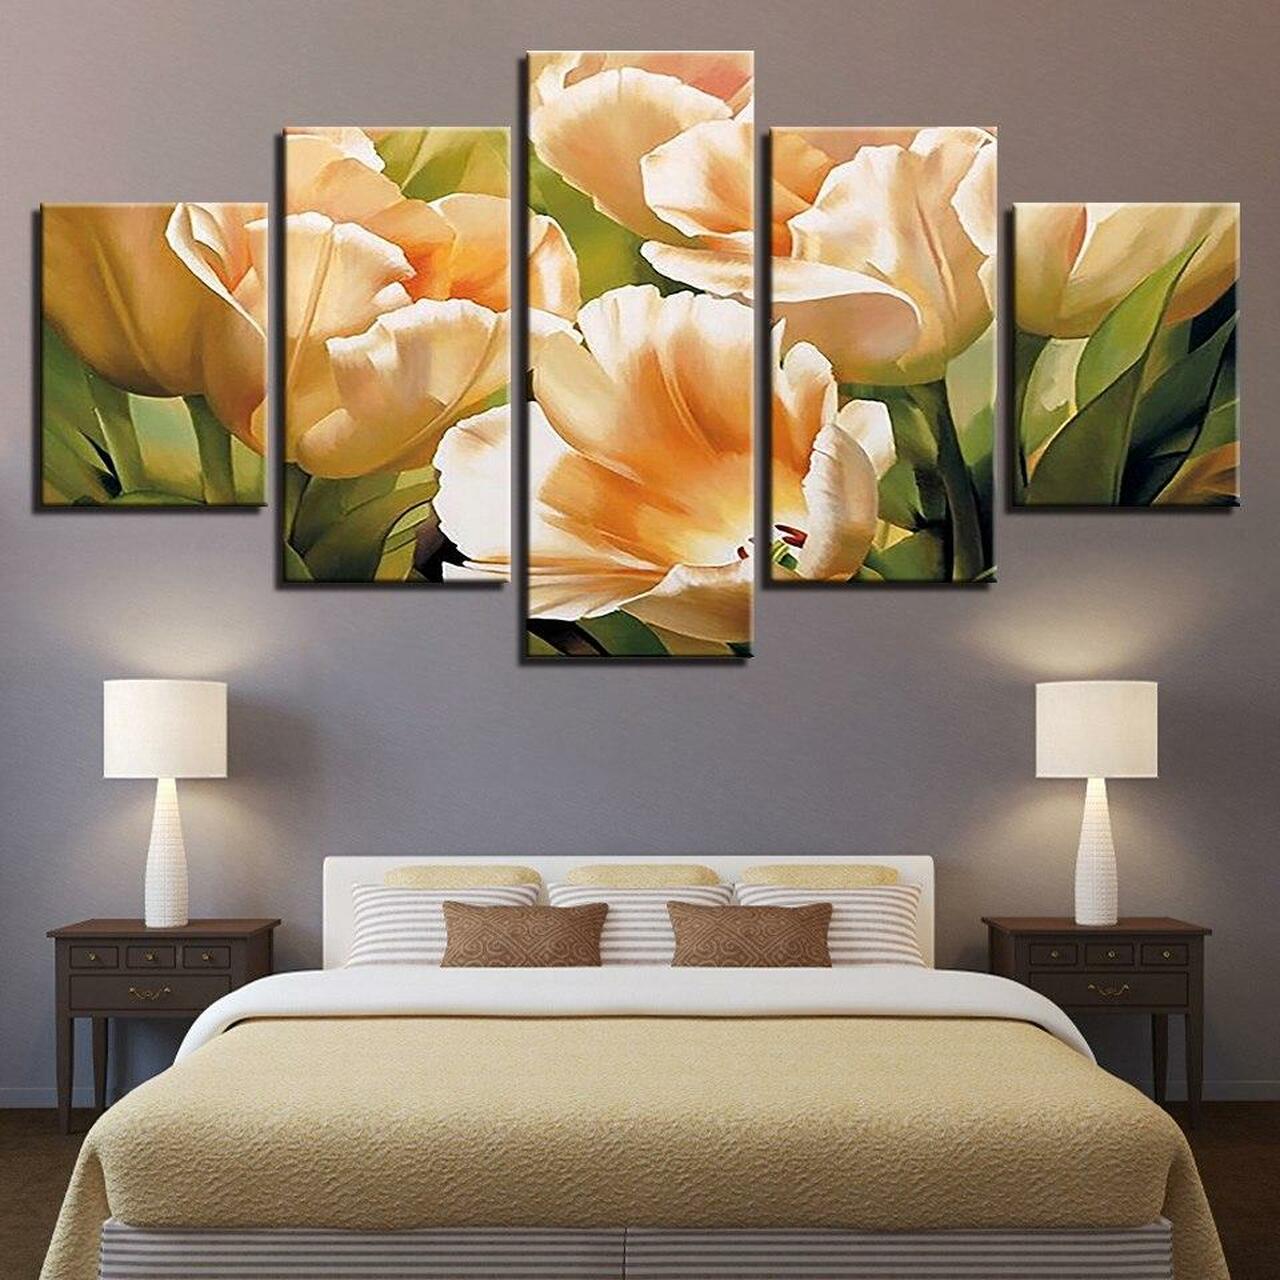 champagne tulips flower 5 pices peinture sur toile impression sur toile toile art pour la dcoration intrieurejvte1